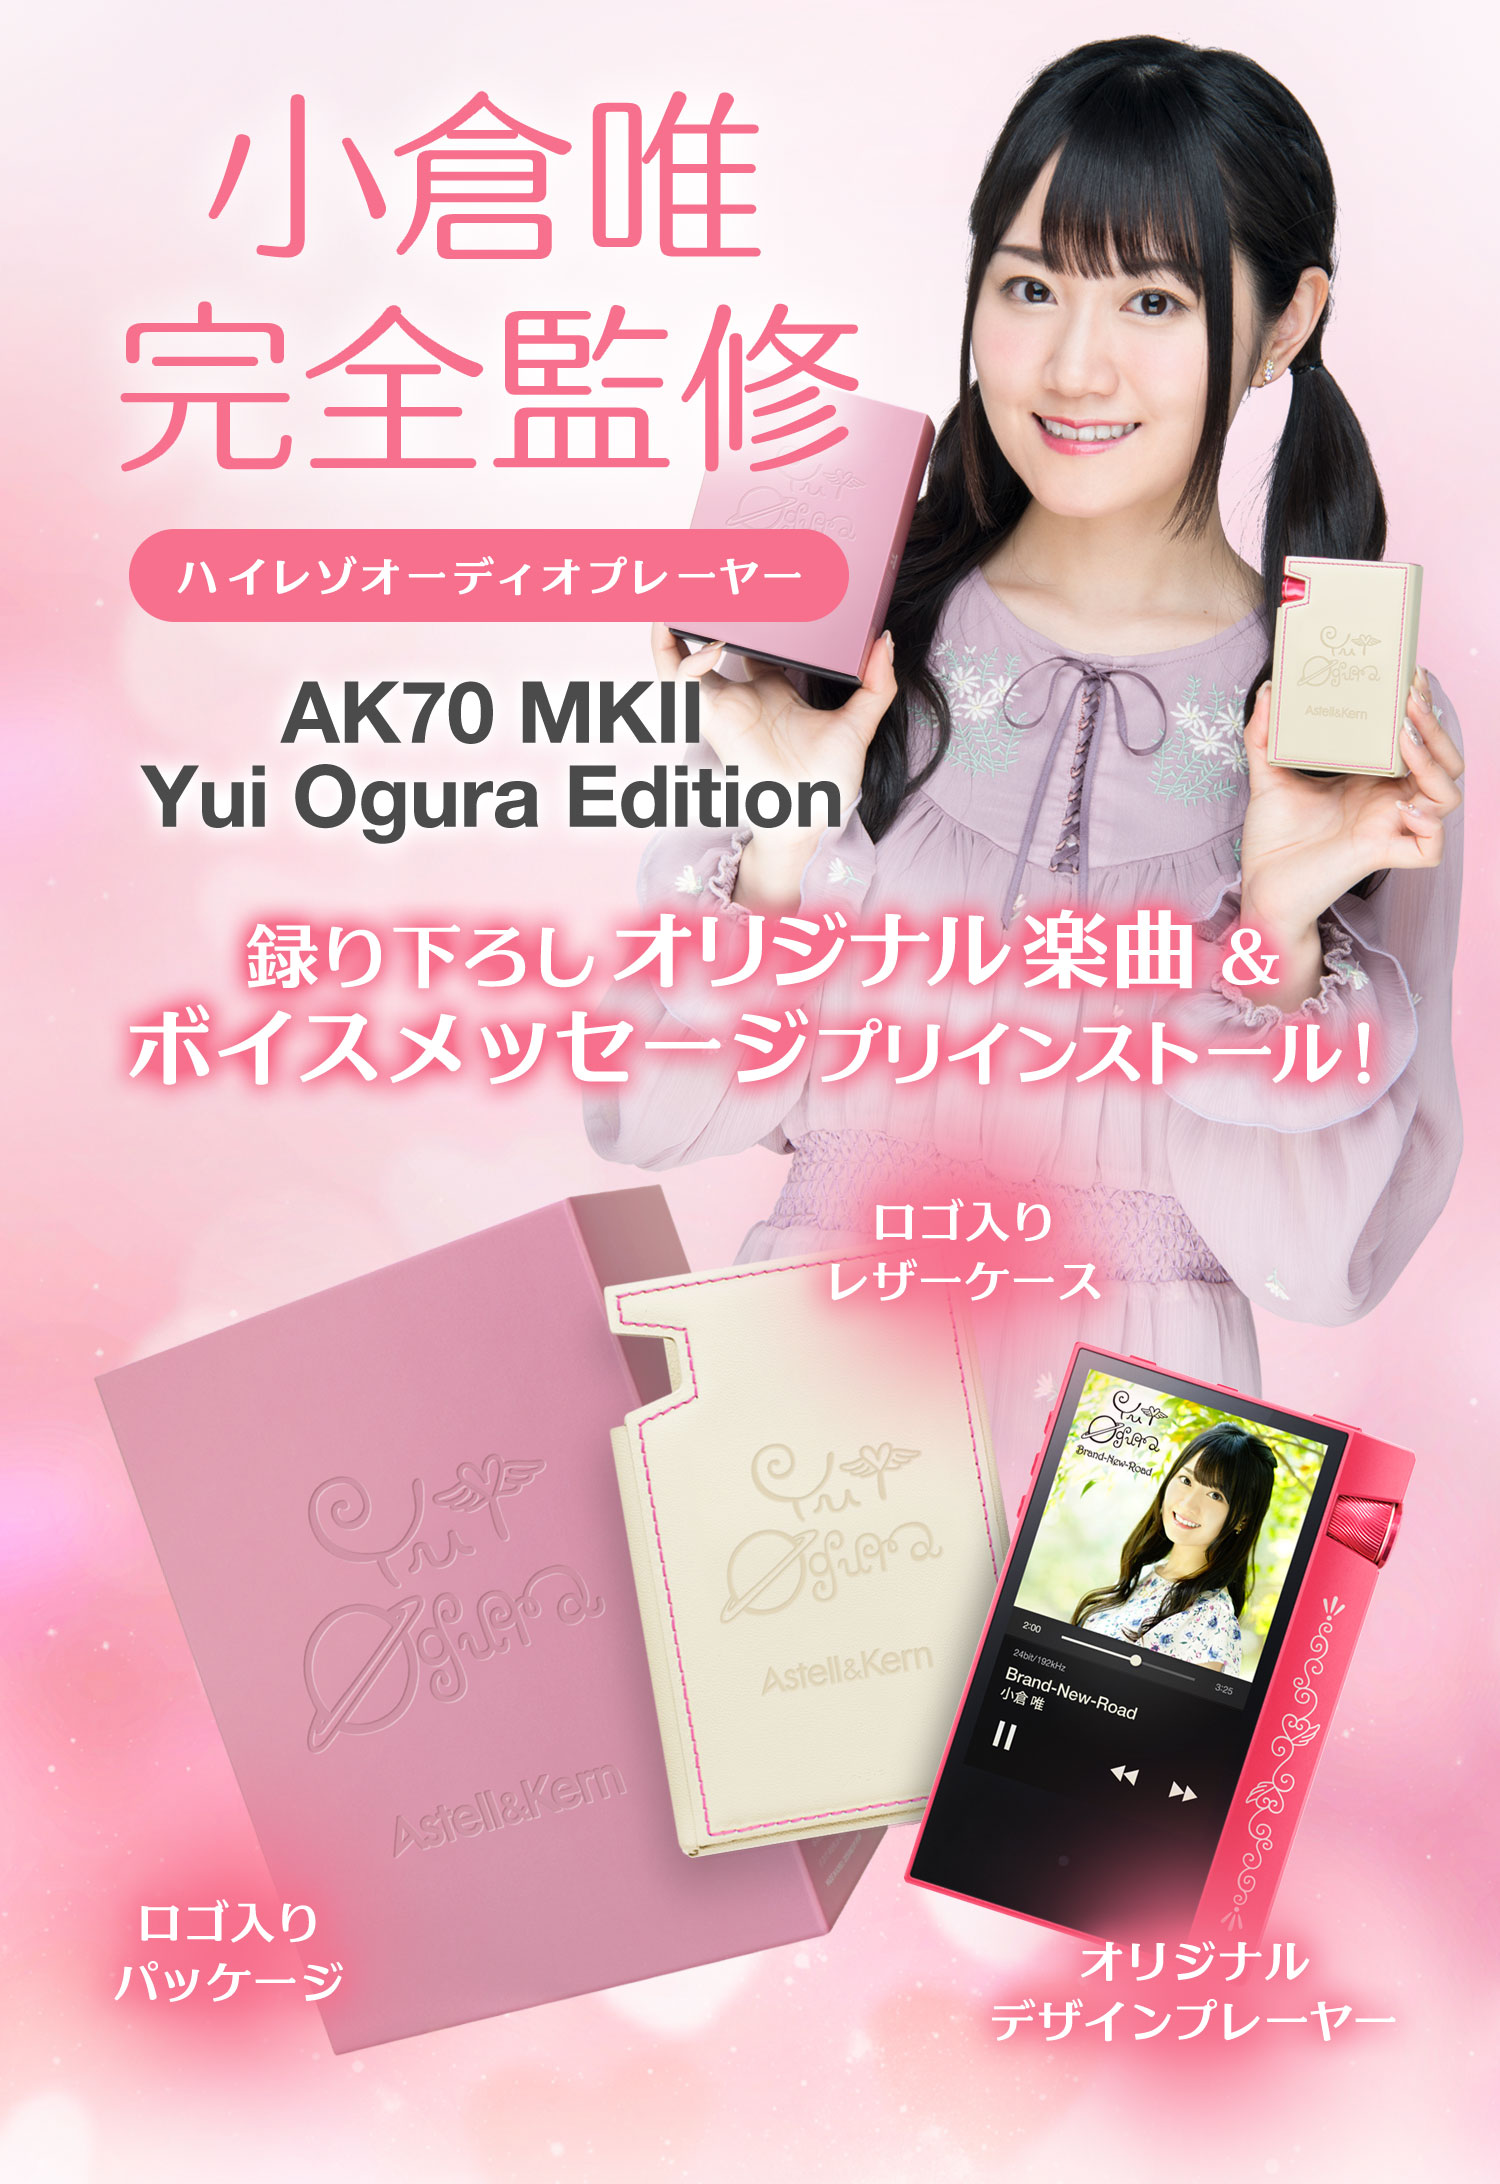 購入最安価格 AK70 Astell&Kern MKII Edition Ogura Yui ポータブルプレーヤー